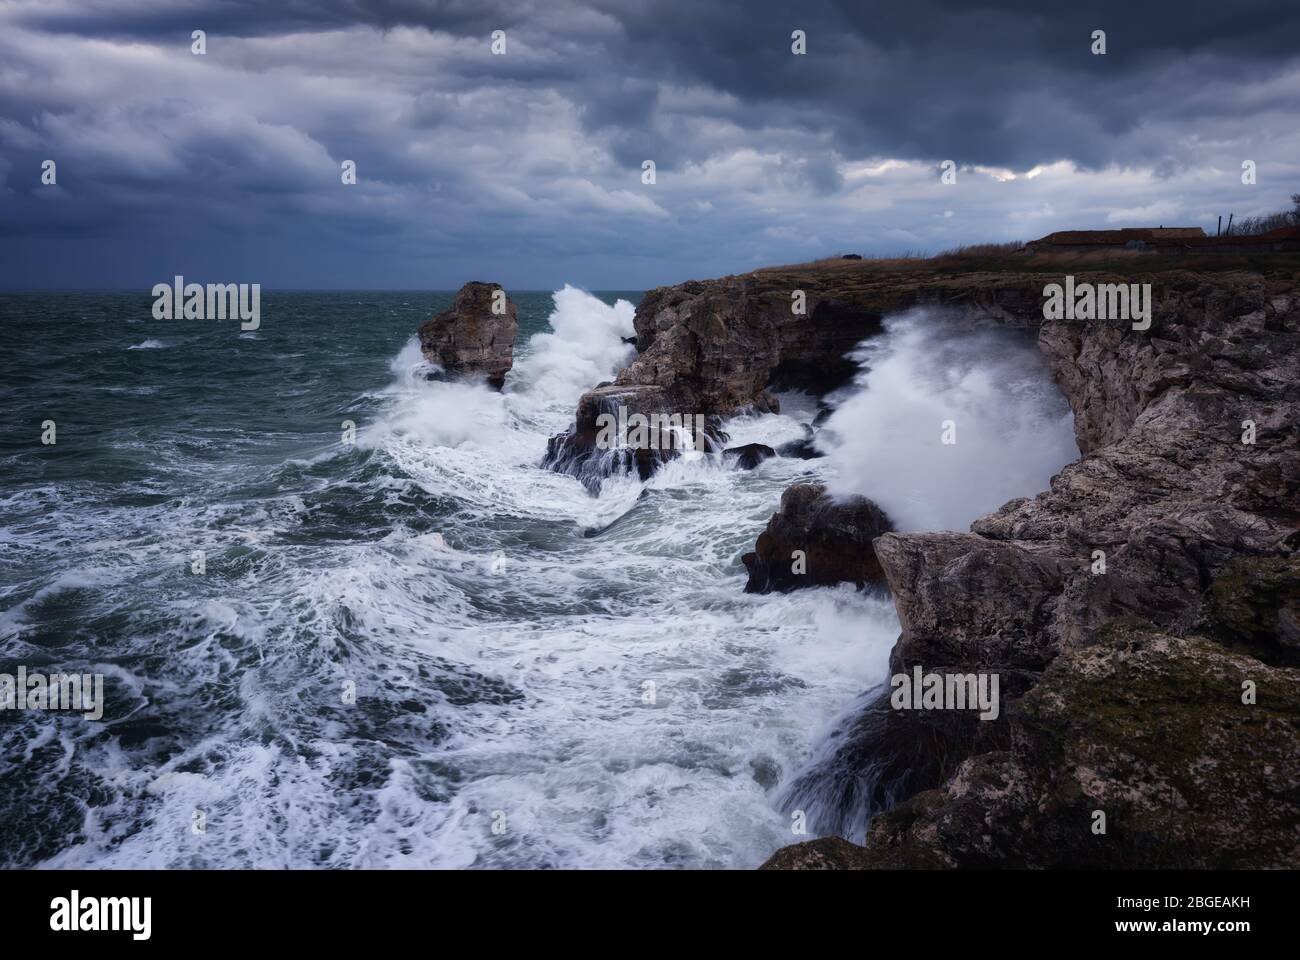 Dramatische Natur Hintergrund - große Wellen und dunklen Felsen in stürmischen Meer, stürmisches Wetter. Dramatische Szene. Kontrastierende Farben.schöne Naturlandschaft Stockfoto